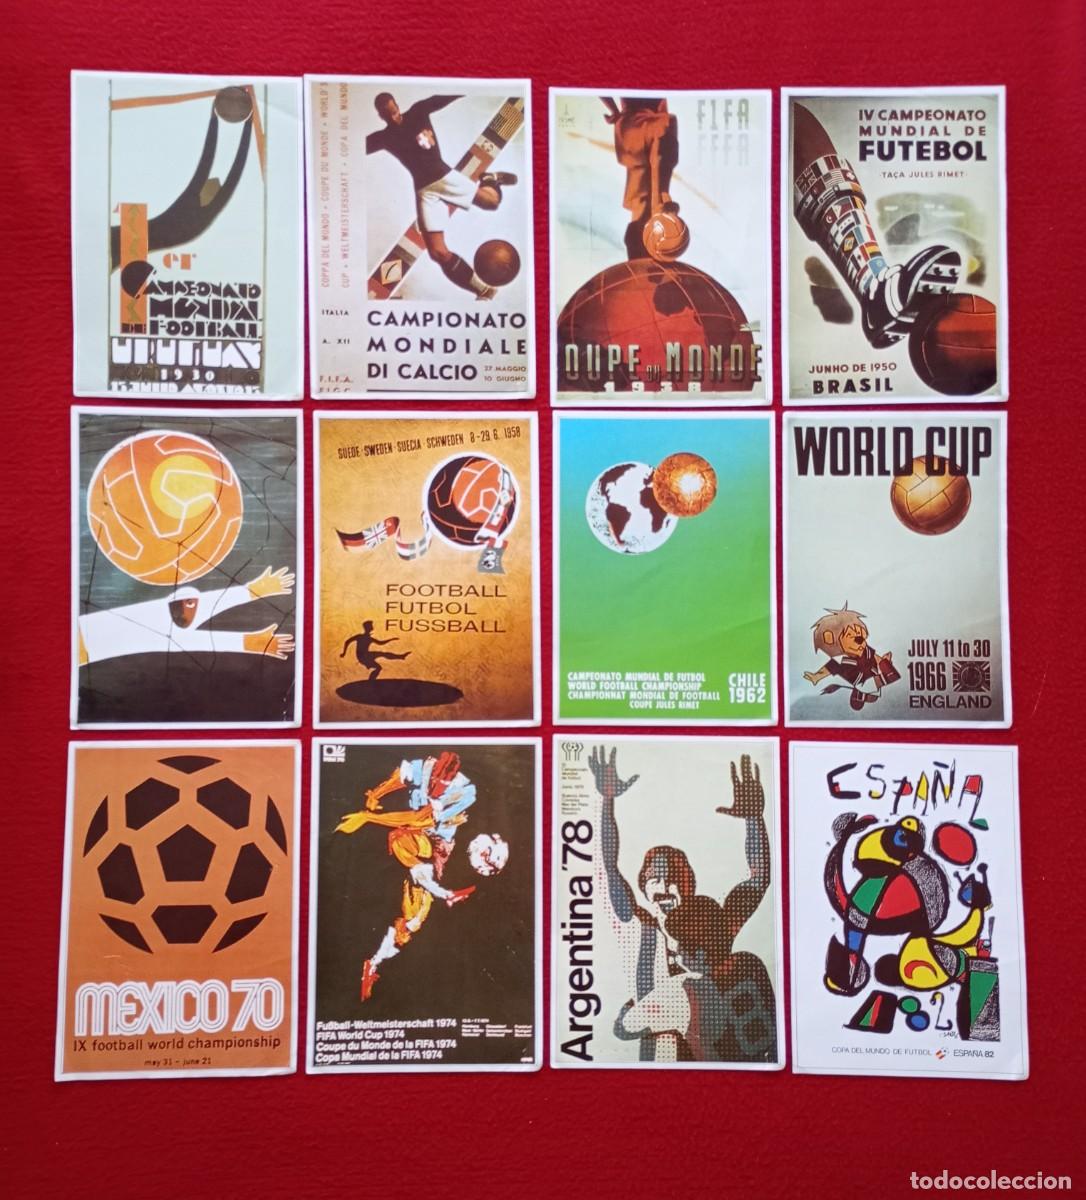 Poster di calcio -  España